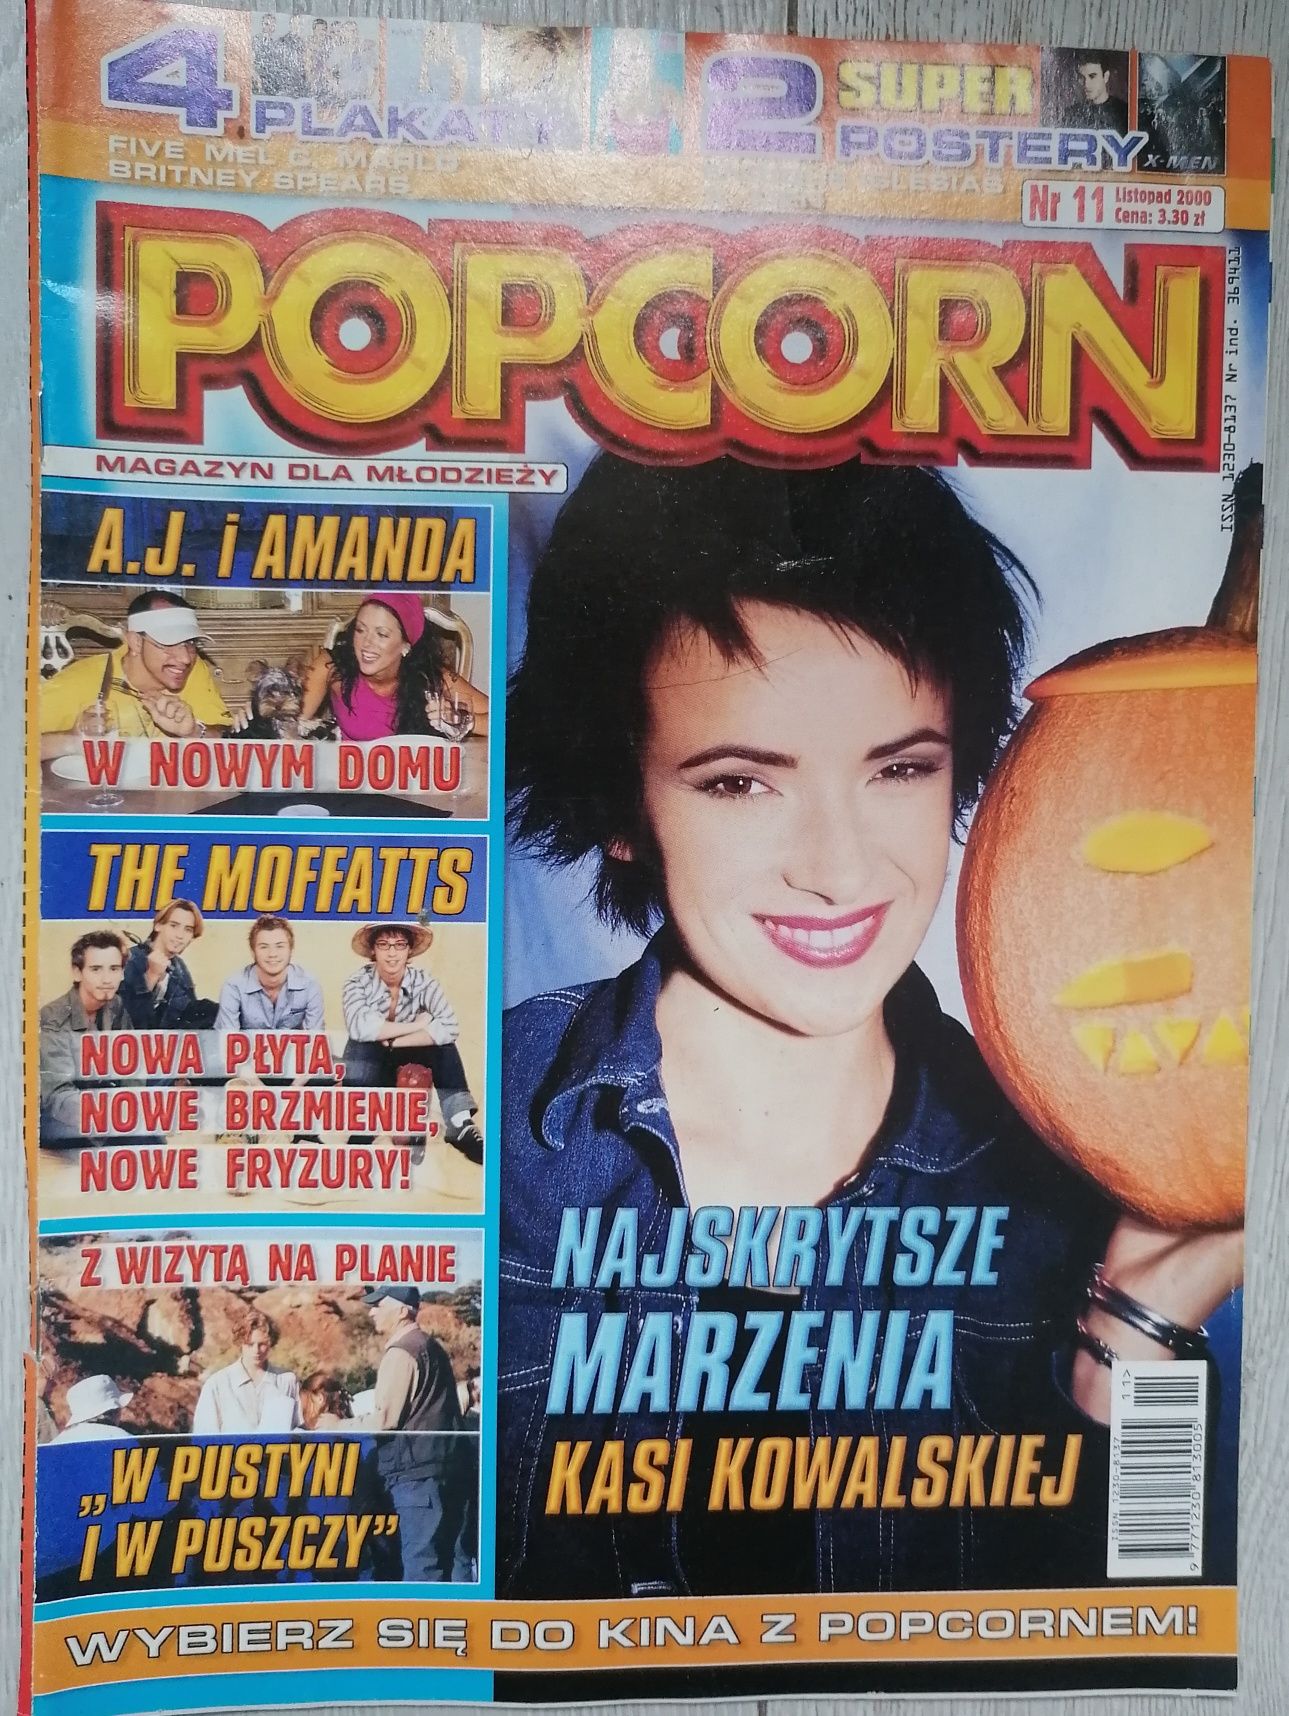 Gazeta Popcorn 2000 Enrique Iglesias Aguilera Britney Spears